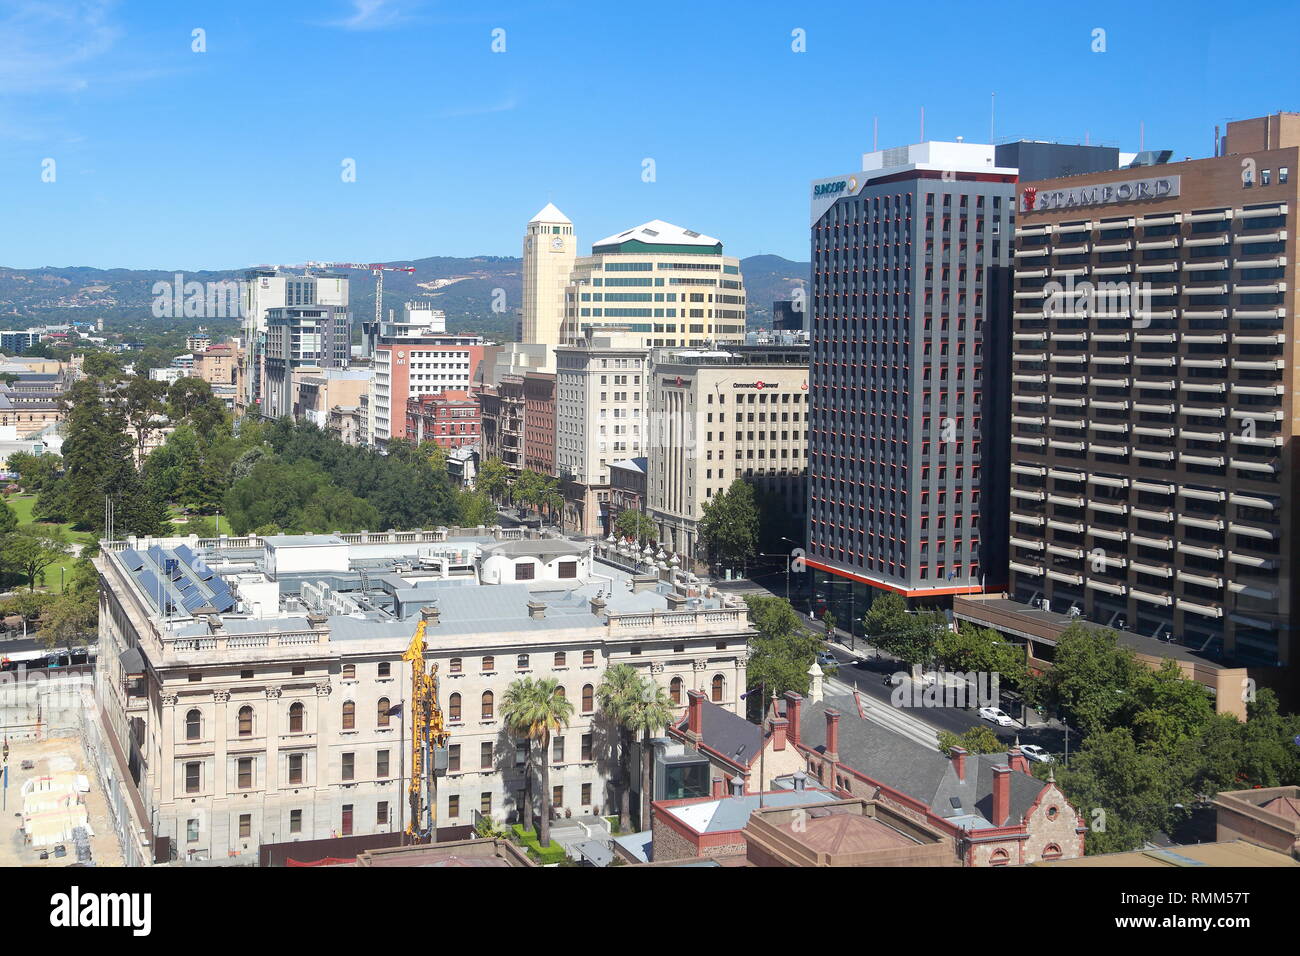 Anzeigen von Adelaide aus dem Sheraton Hotel, Adelaide, South Australia Stockfoto